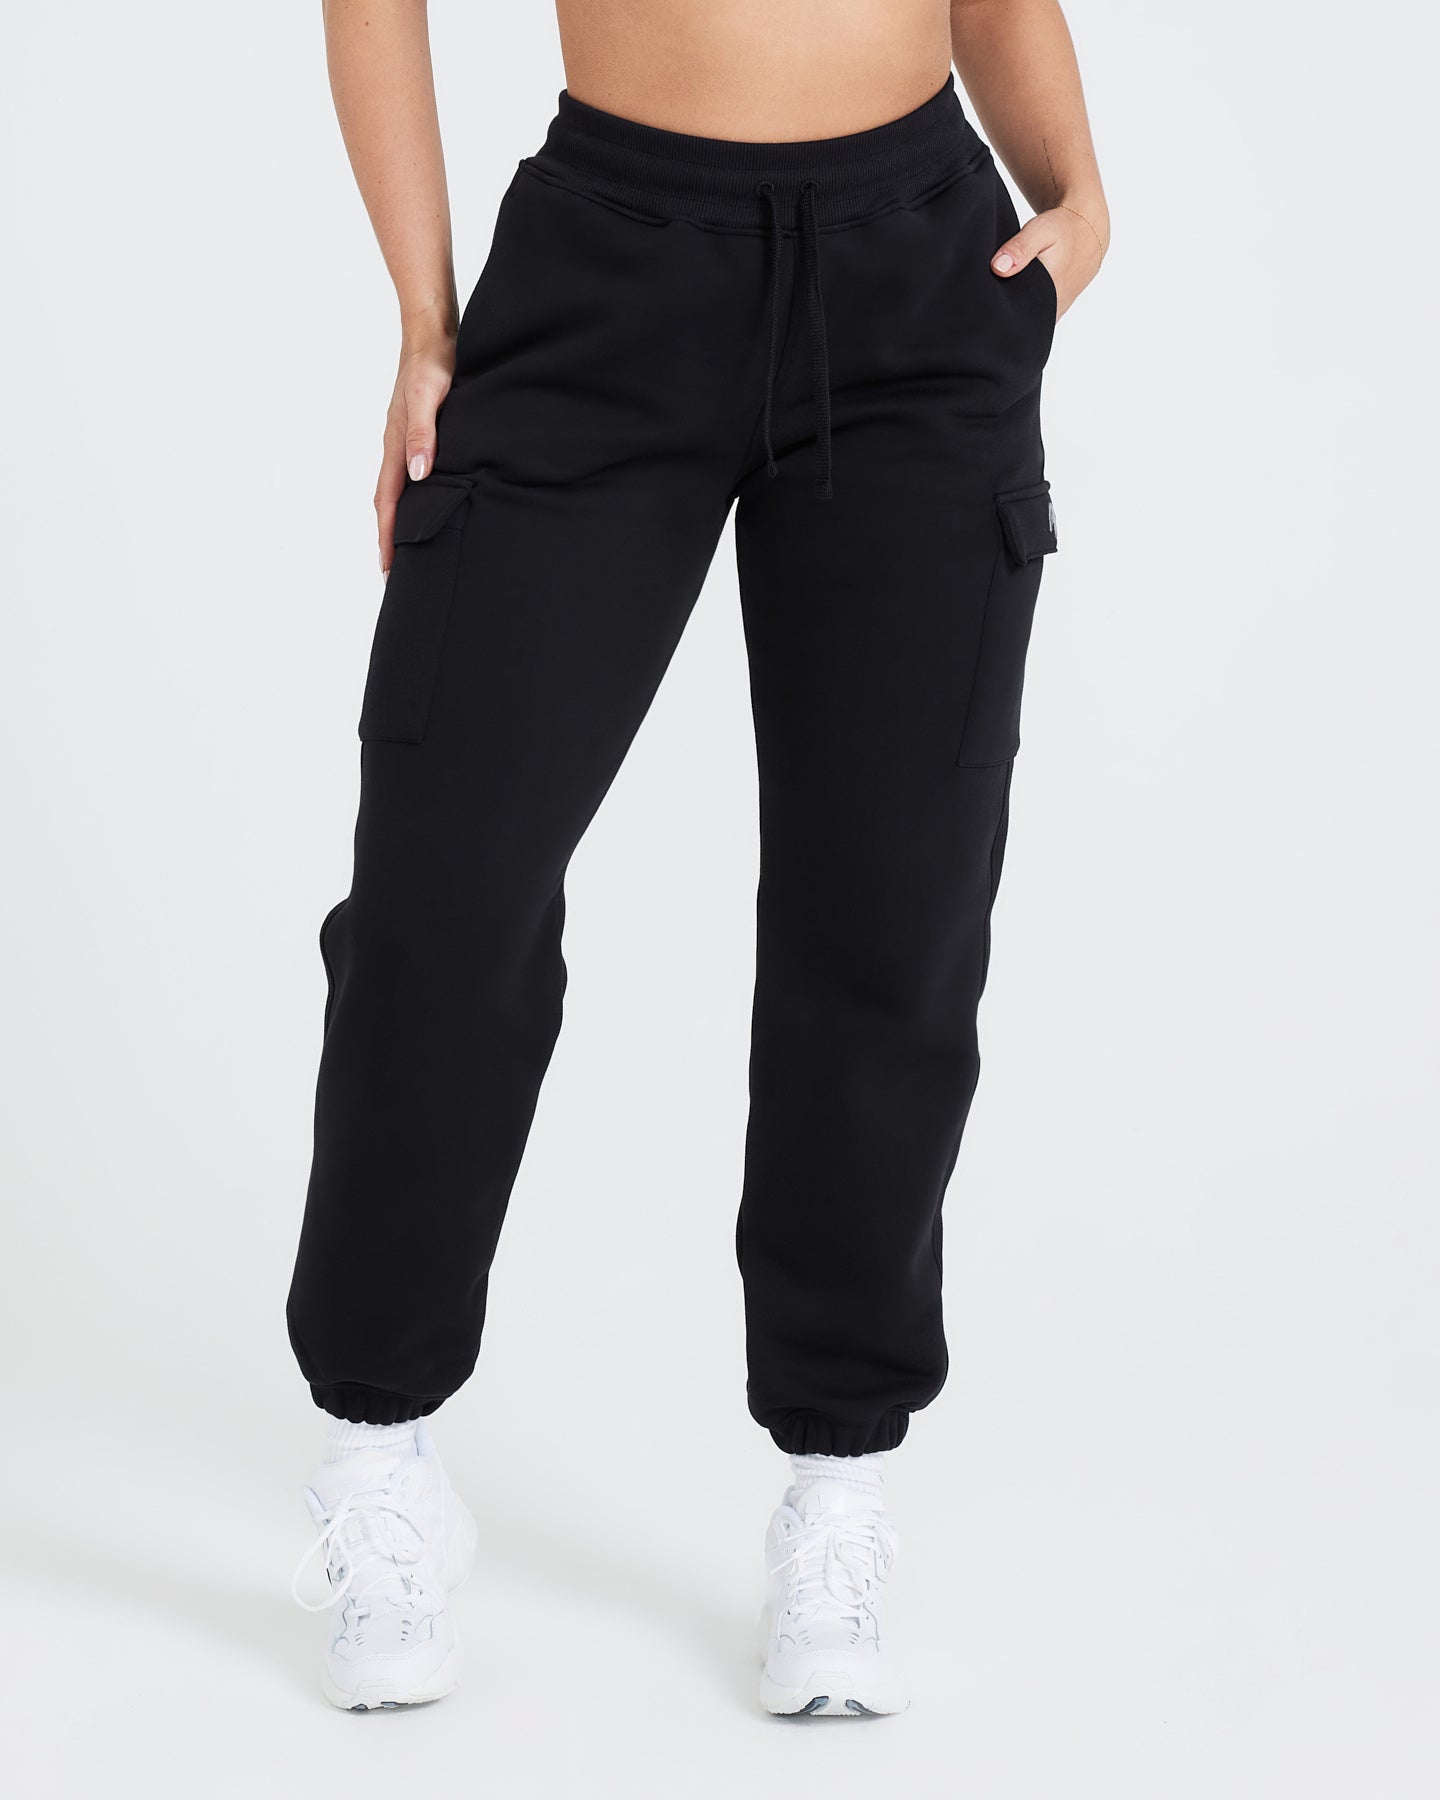 Ladies Black Joggers - Front Zip Pockets | Oner Active UK